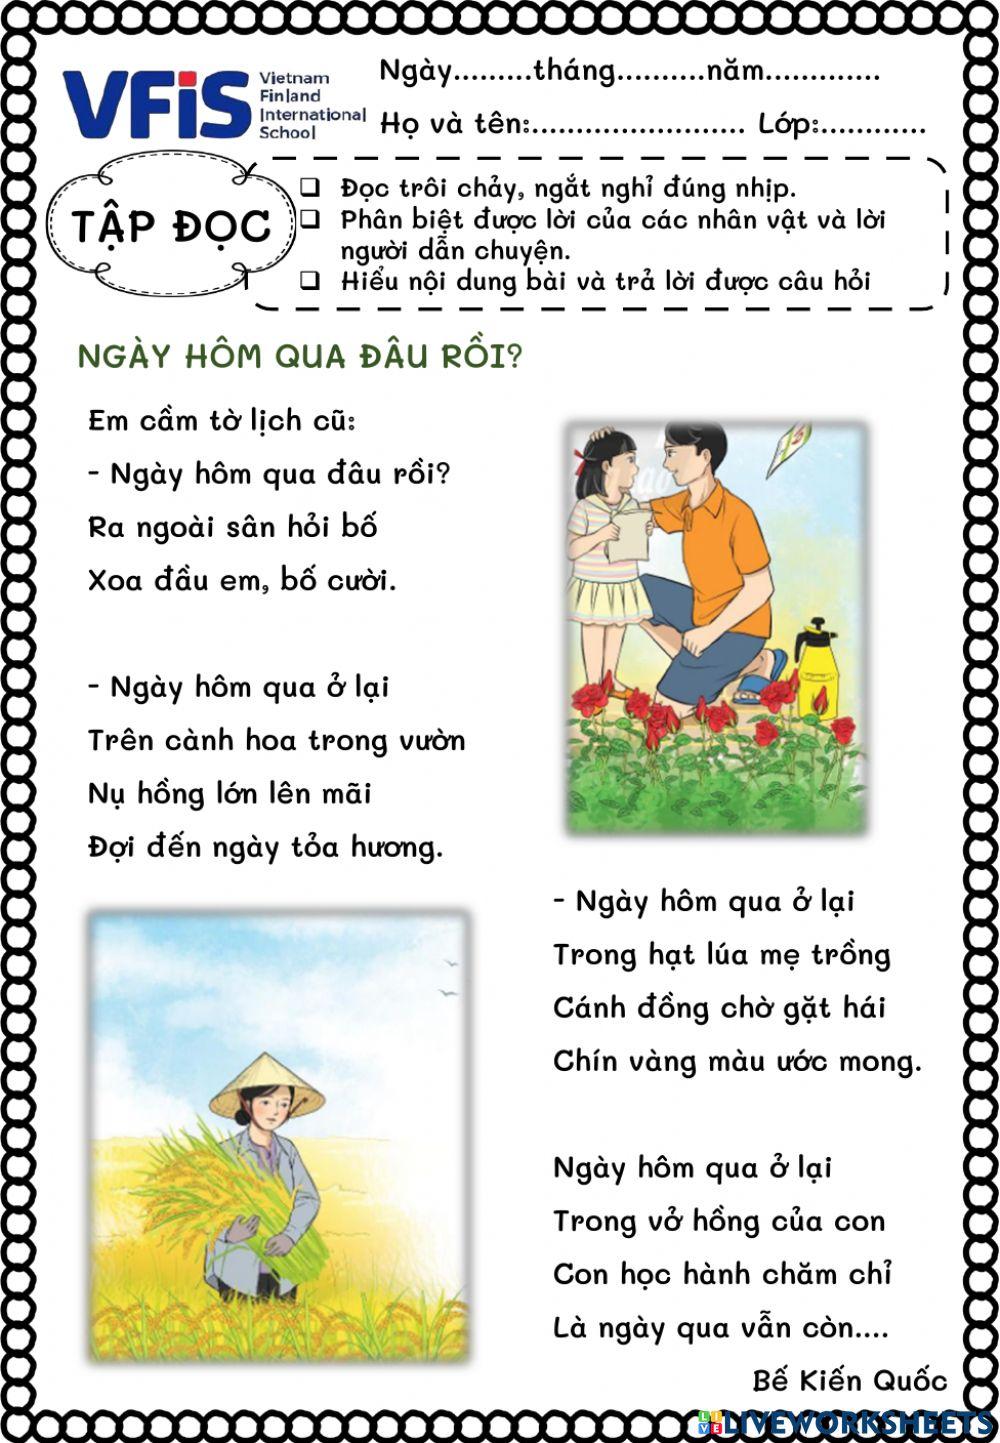 Vietnamese Week 2 - Đọc 1